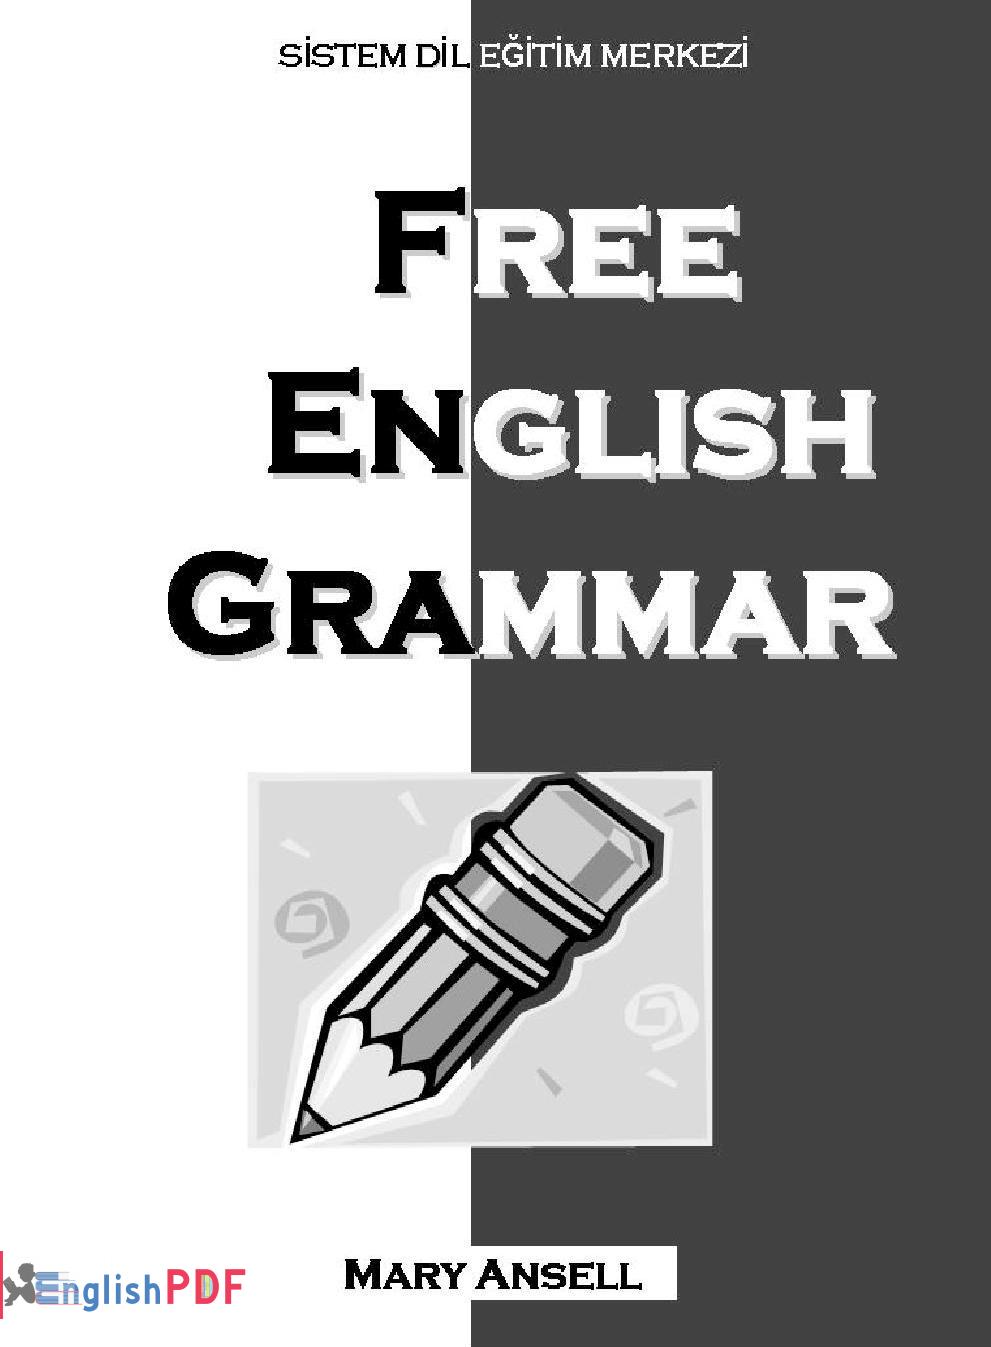 Free English Grammar PDF By EnglishPDF